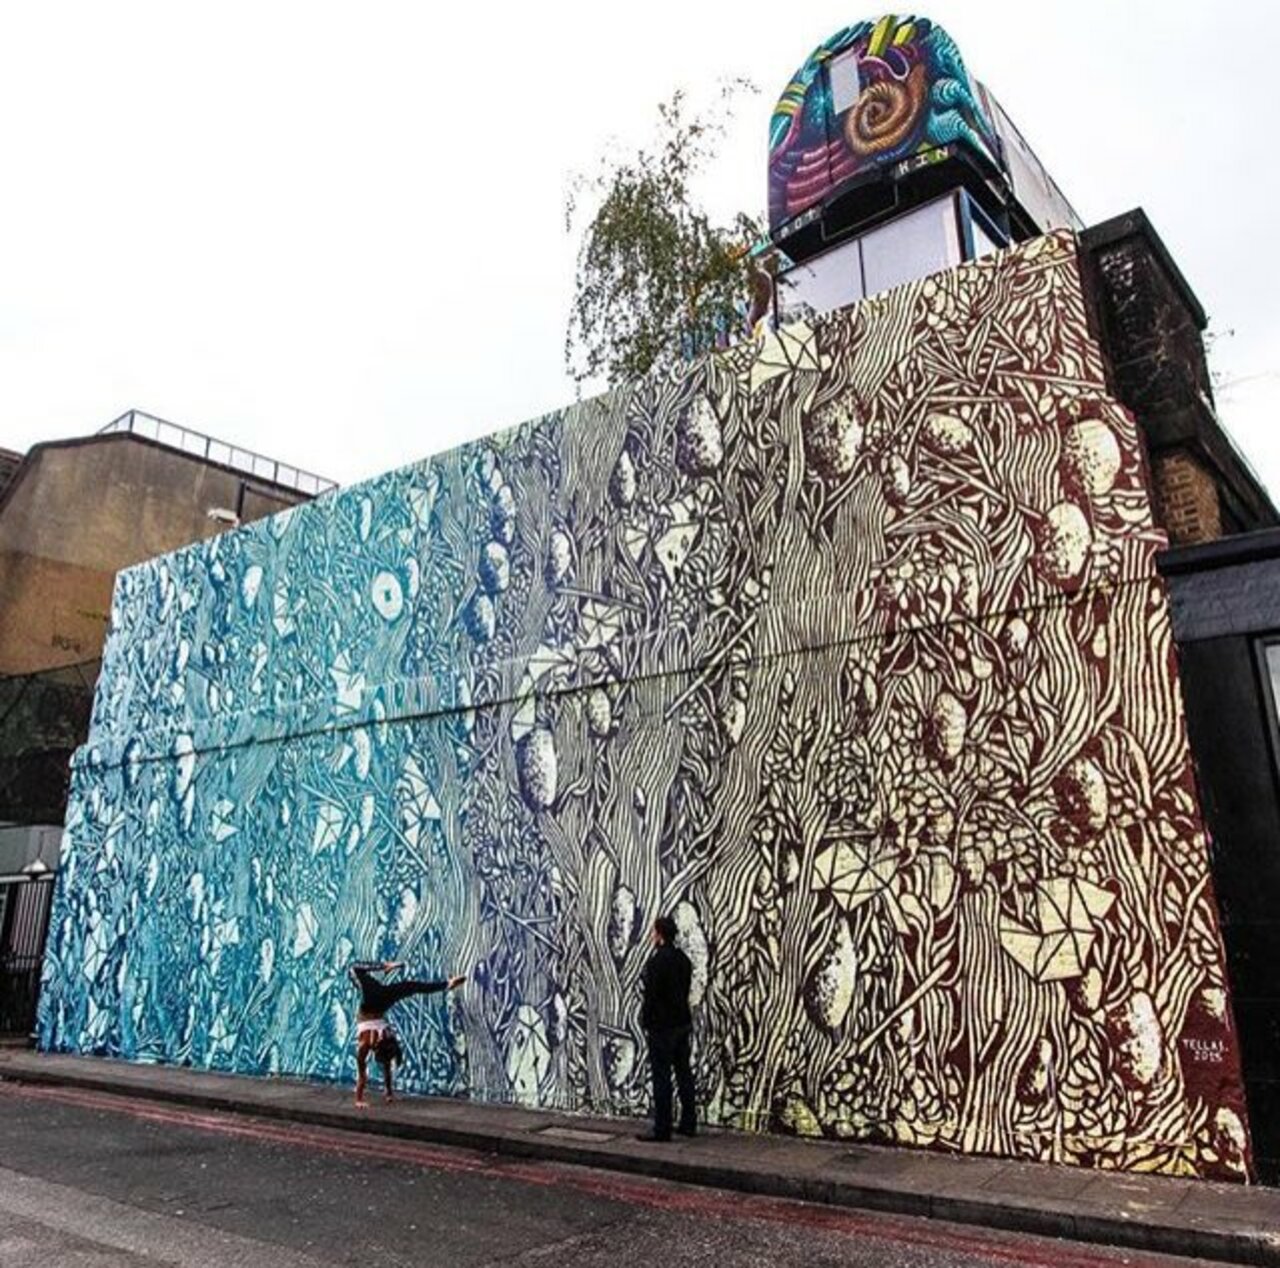 New Street Art by Tellas in Shoreditch London 

#art #graffiti #mural #streetart https://t.co/pPZN2Py268